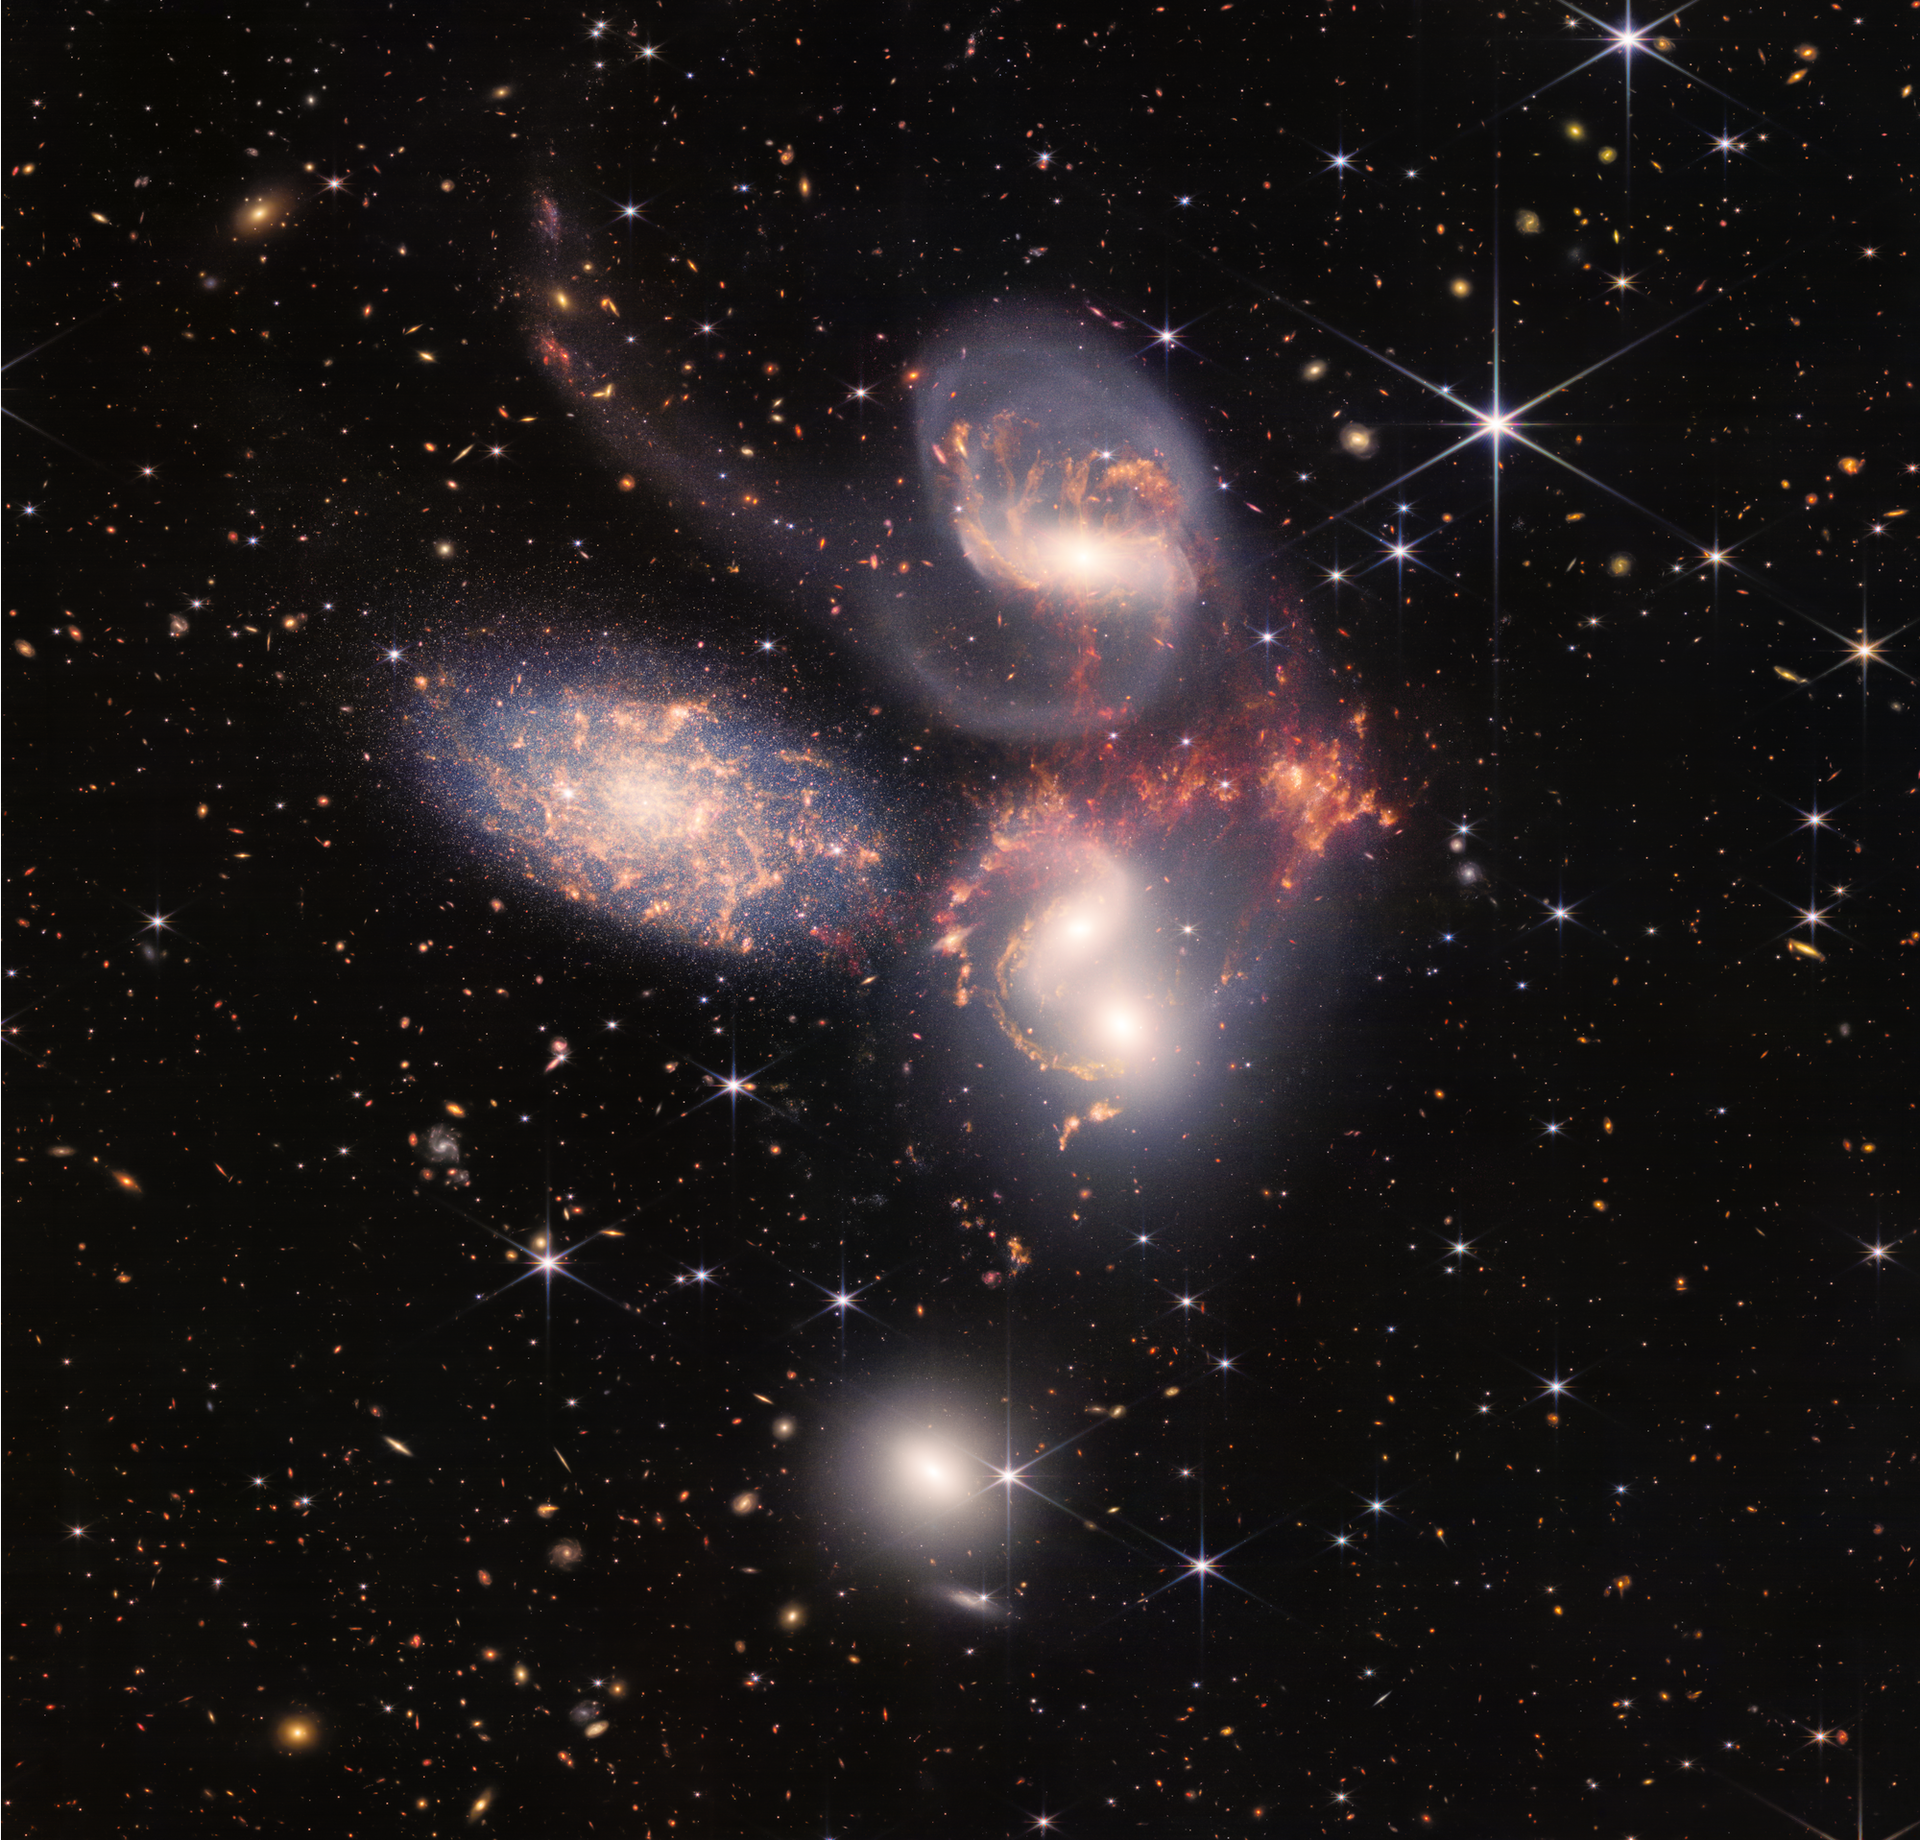 Stephan’s Quintet – NIRCam and MIRI imaging